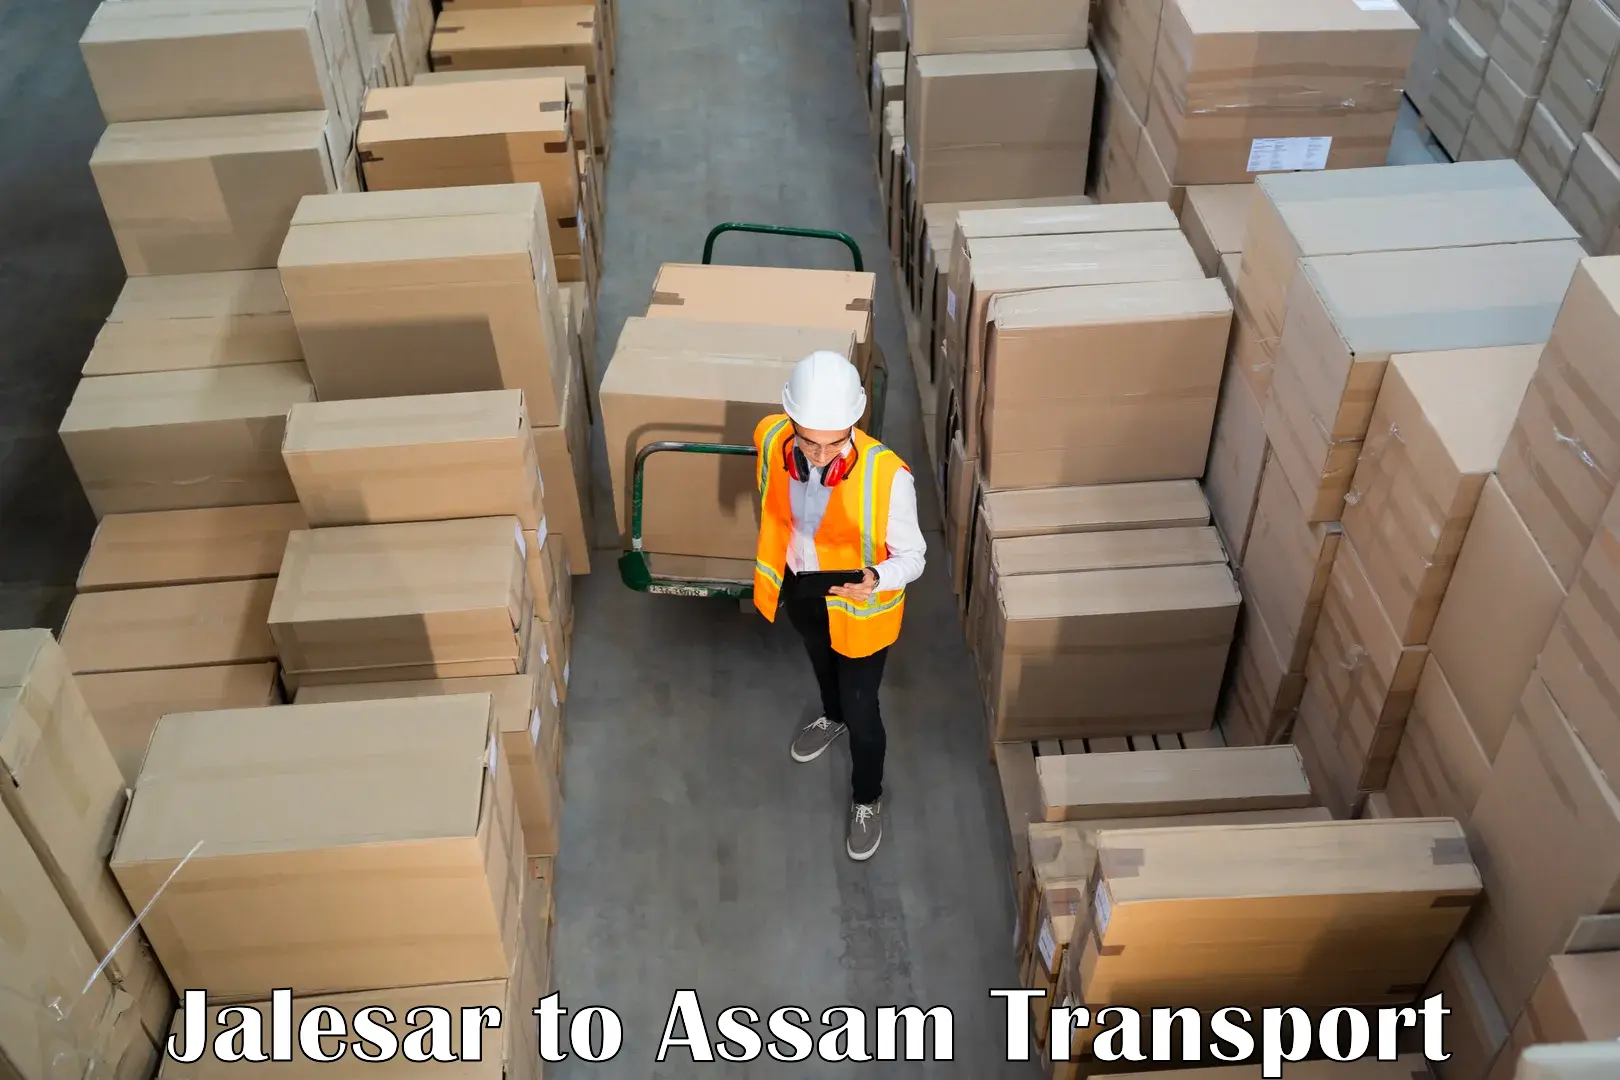 Road transport online services Jalesar to Dhubri